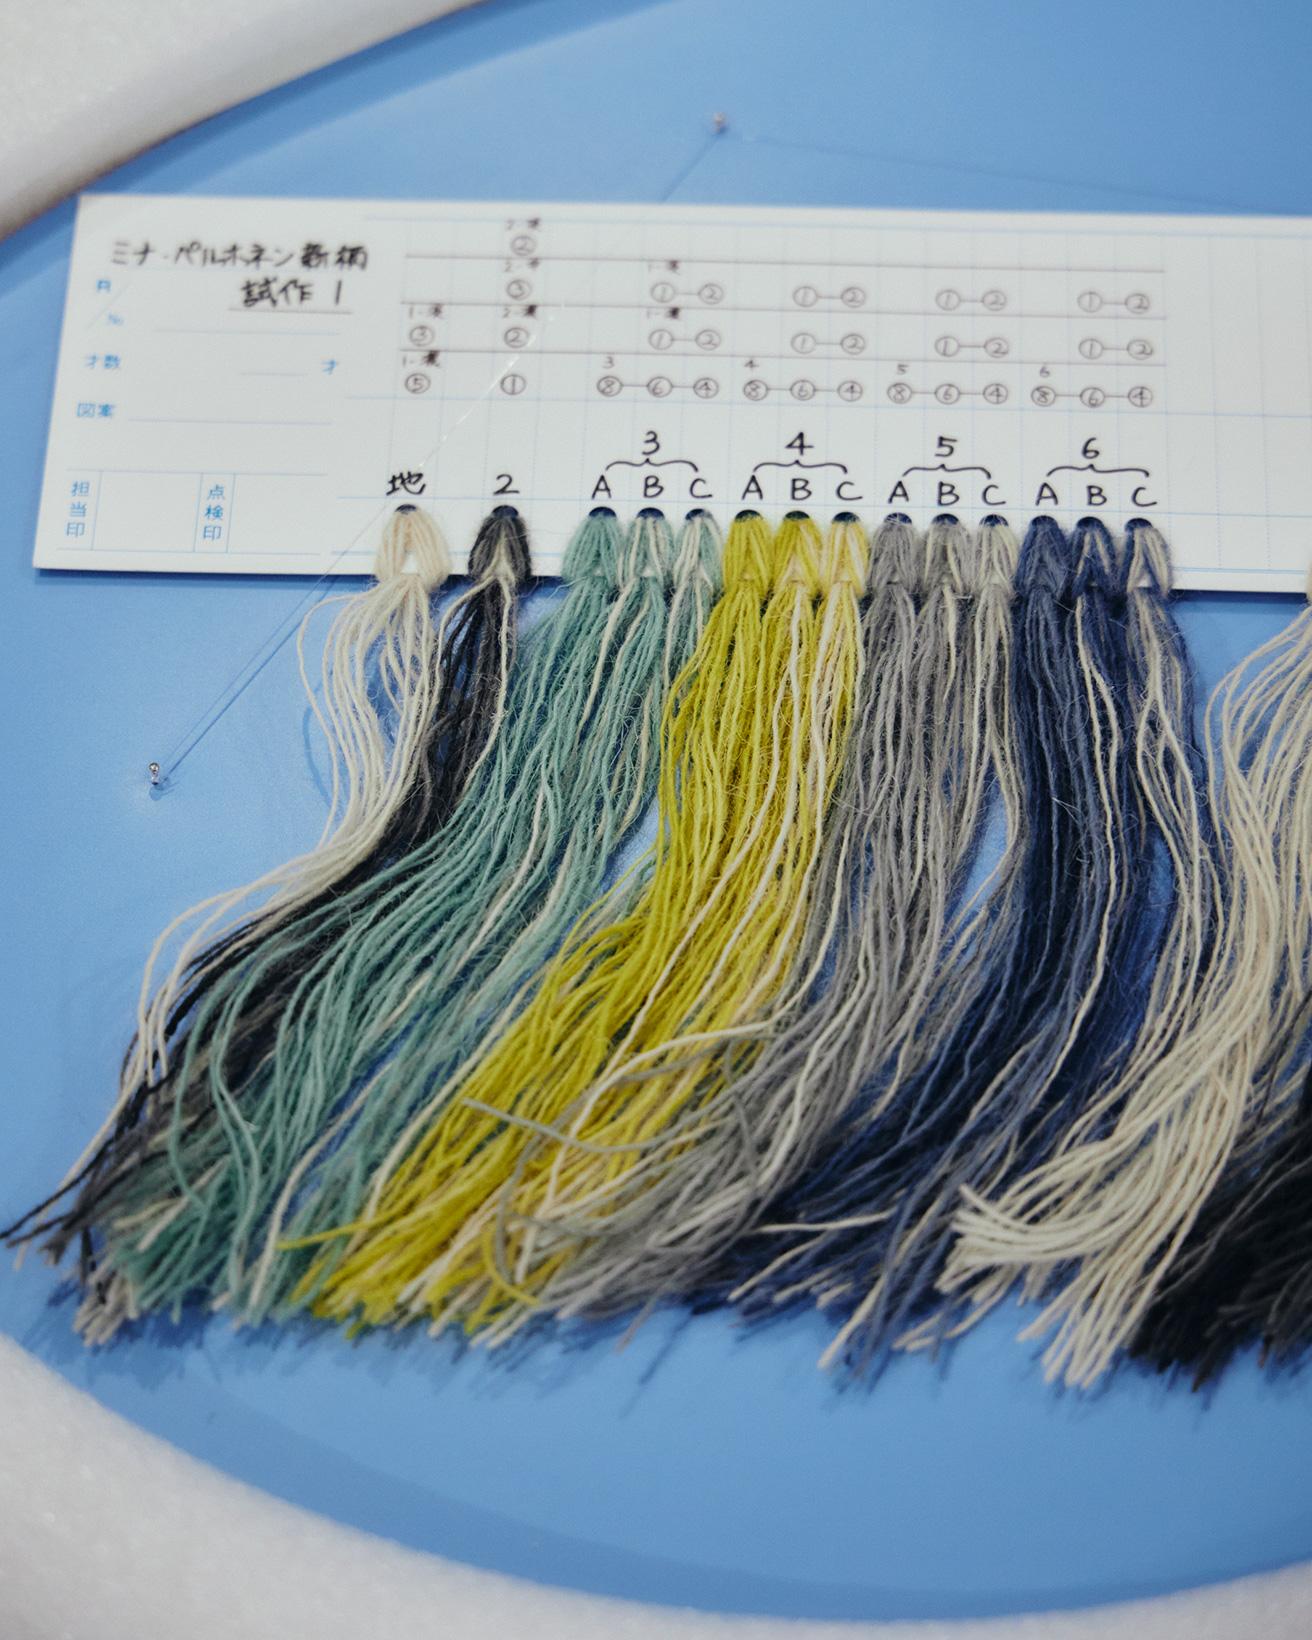 糸の色表現を探るための試作見本。国立新美術館展示風景（皆川 明 「山形緞通」　〈雪国のくらし〉を支えるデザイン）photo_Masanori Kaneshita